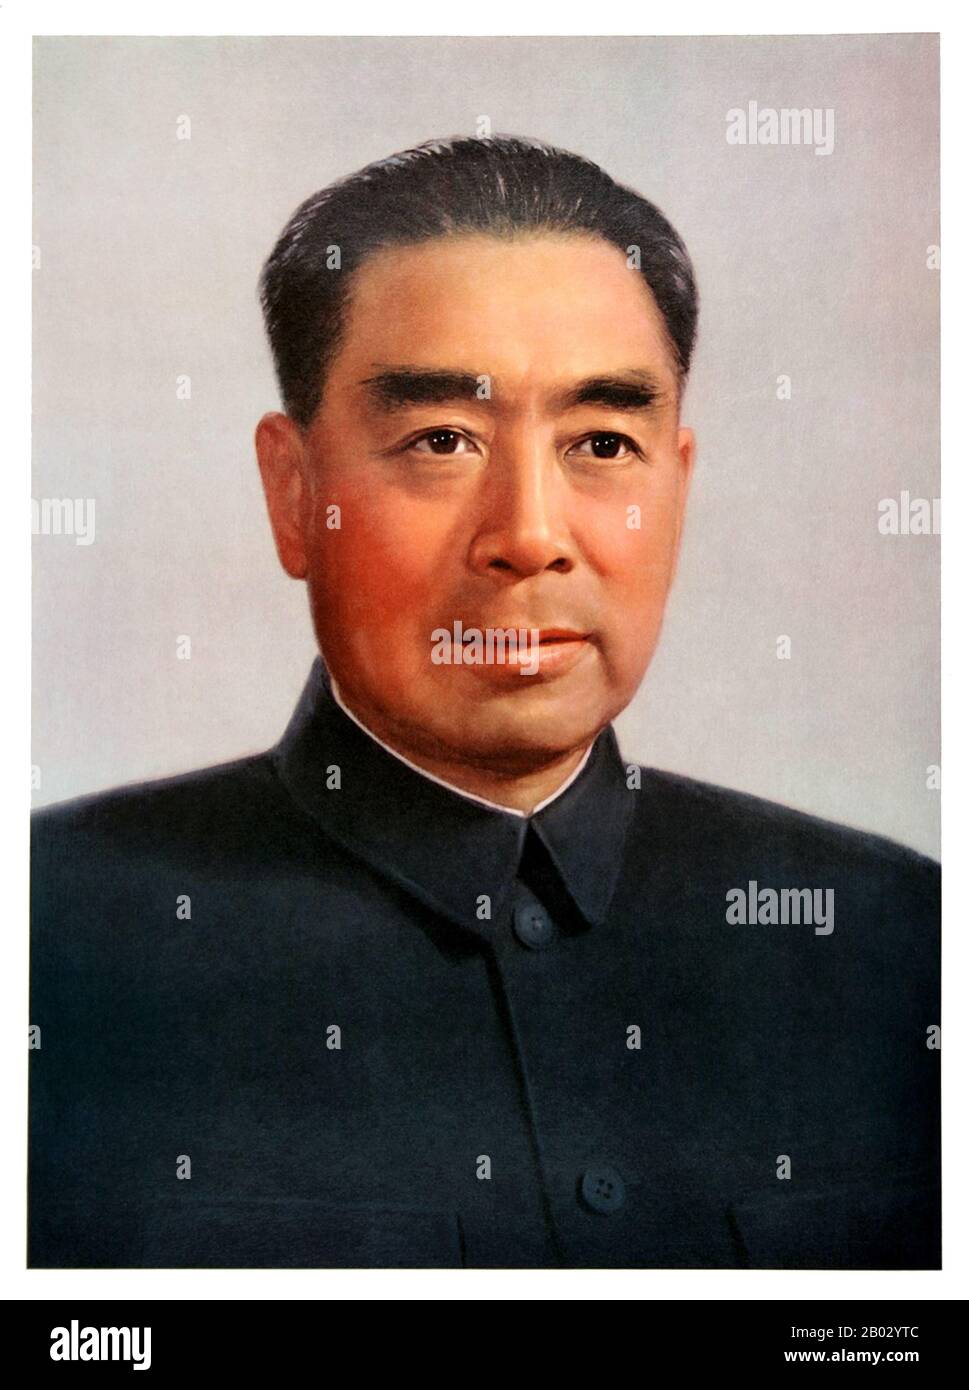 Zhou Enlai war der erste Premier der Volksrepublik China und diente von Oktober 1949 bis zu seinem Tod im Januar 1976. Zhou war maßgeblich am Machtaufstieg der Kommunistischen Partei und danach an der Entwicklung der chinesischen Wirtschaft und der Umstrukturierung der chinesischen Gesellschaft beteiligt. Stockfoto